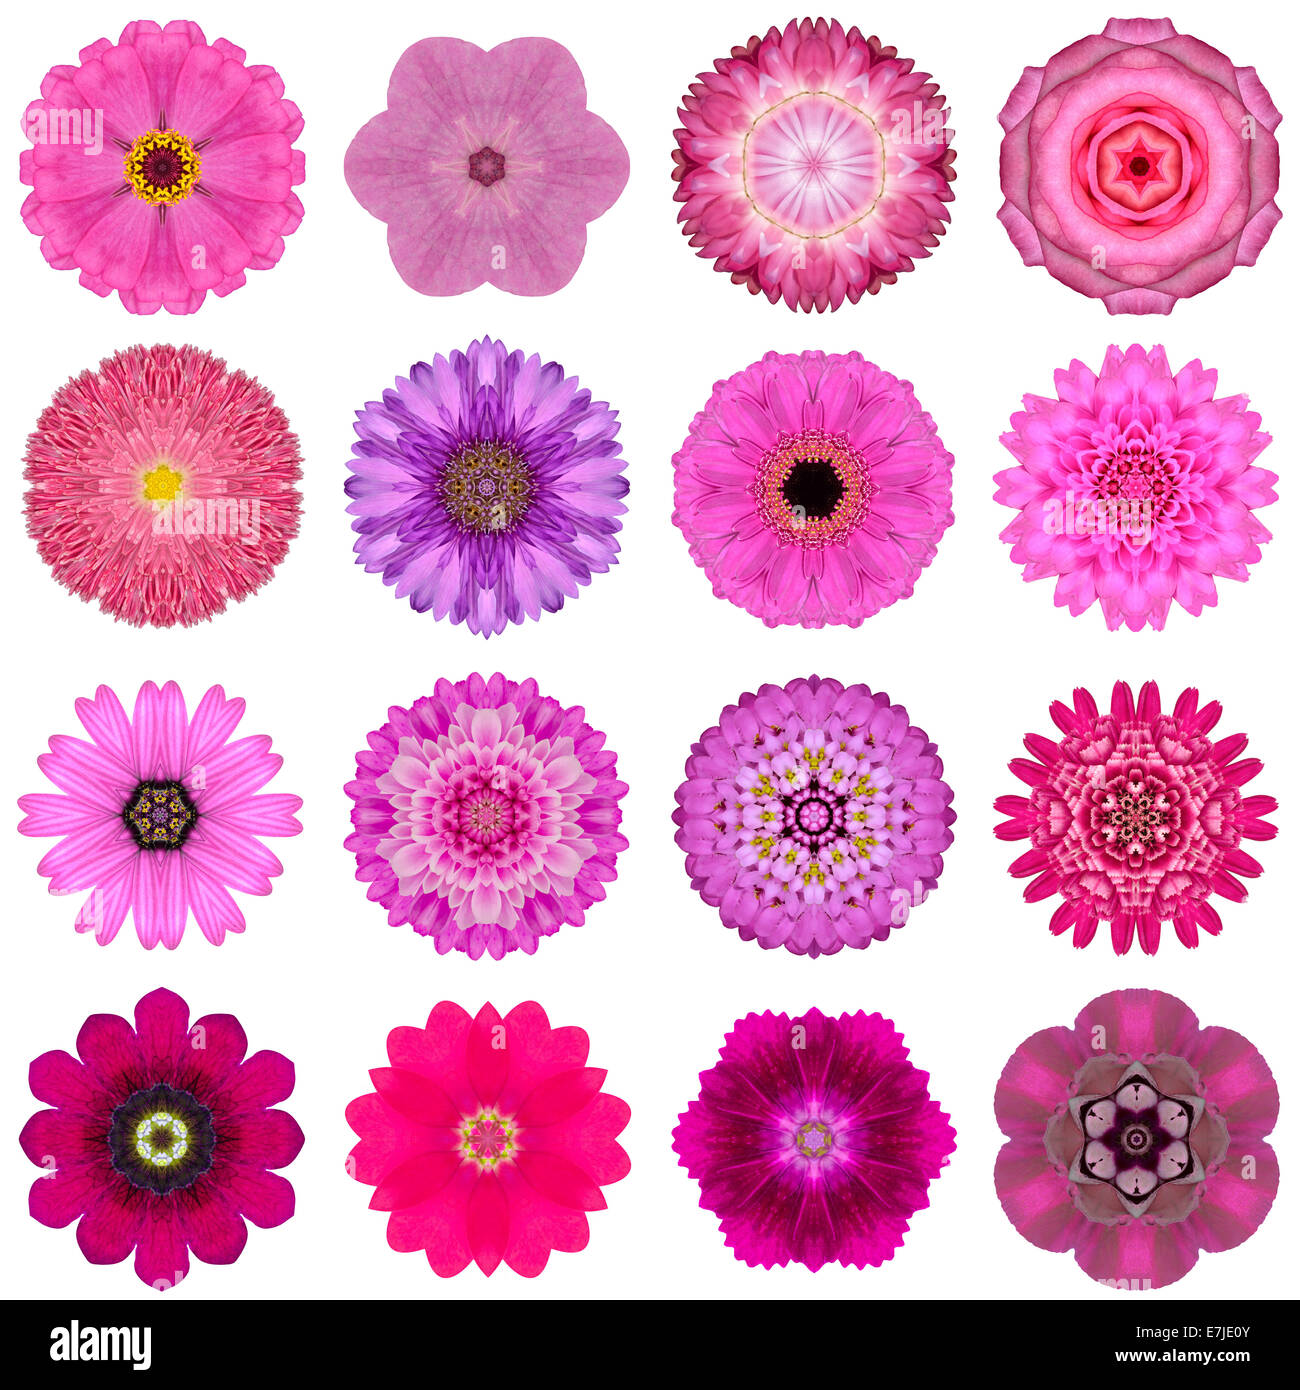 Große Sammlung von verschiedenen rosa konzentrische Muster Blumen. Kaleidoskopische Mandala-Muster, Isolated on White Background. Waschmittelkonzentrat Stockfoto